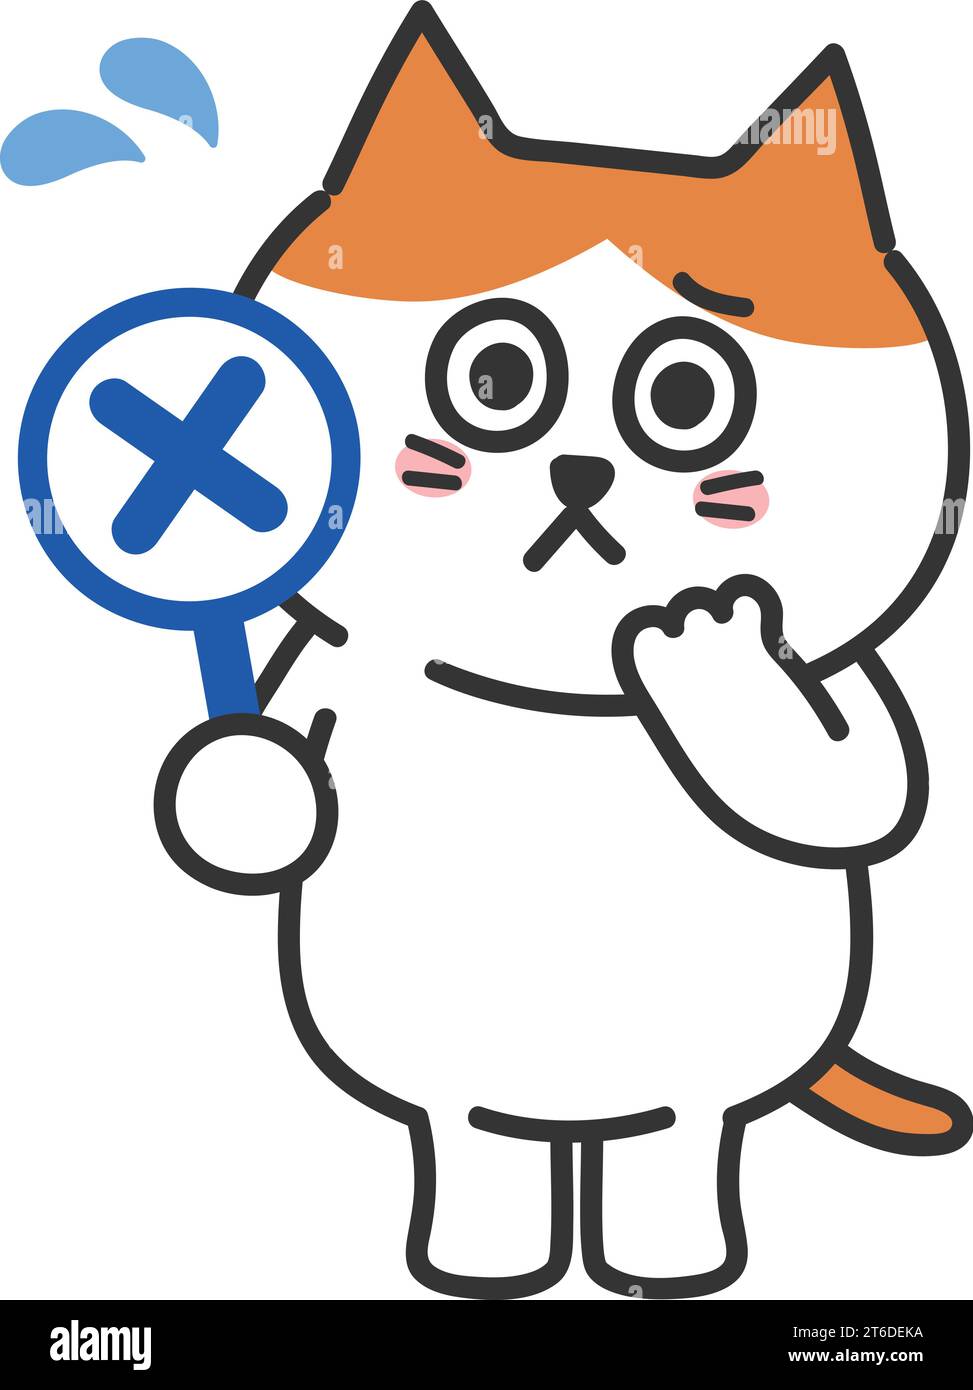 Un chat tabby orange pressé de dessin animé en difficulté fait une erreur. Illustration vectorielle isolée sur un fond transparent. Illustration de Vecteur